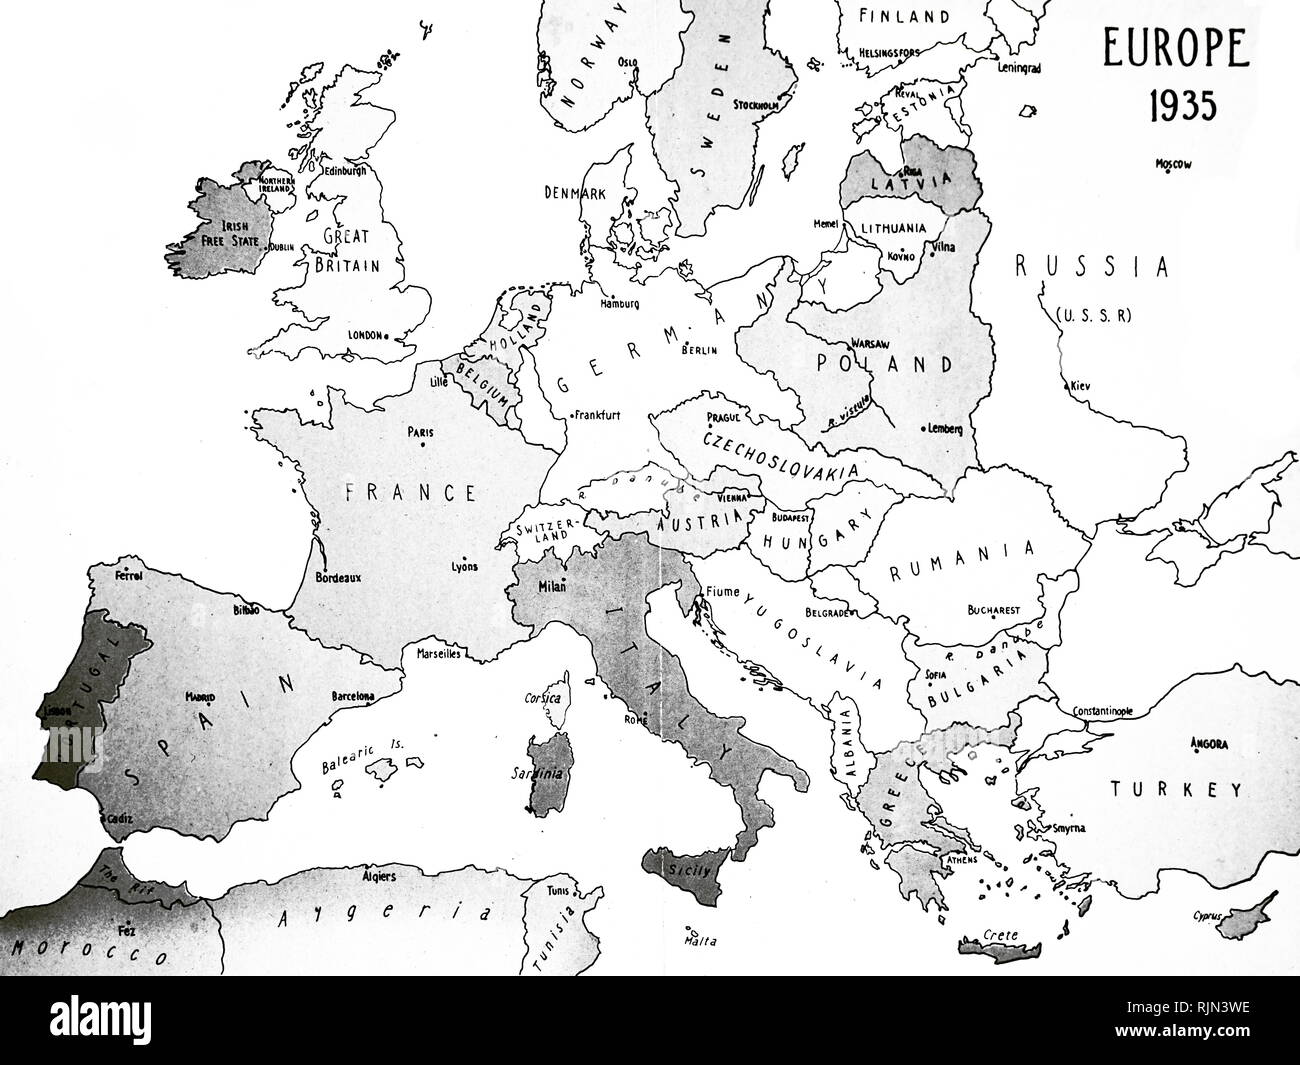 Illustration montrant la carte de l'Europe en 1935 Banque D'Images